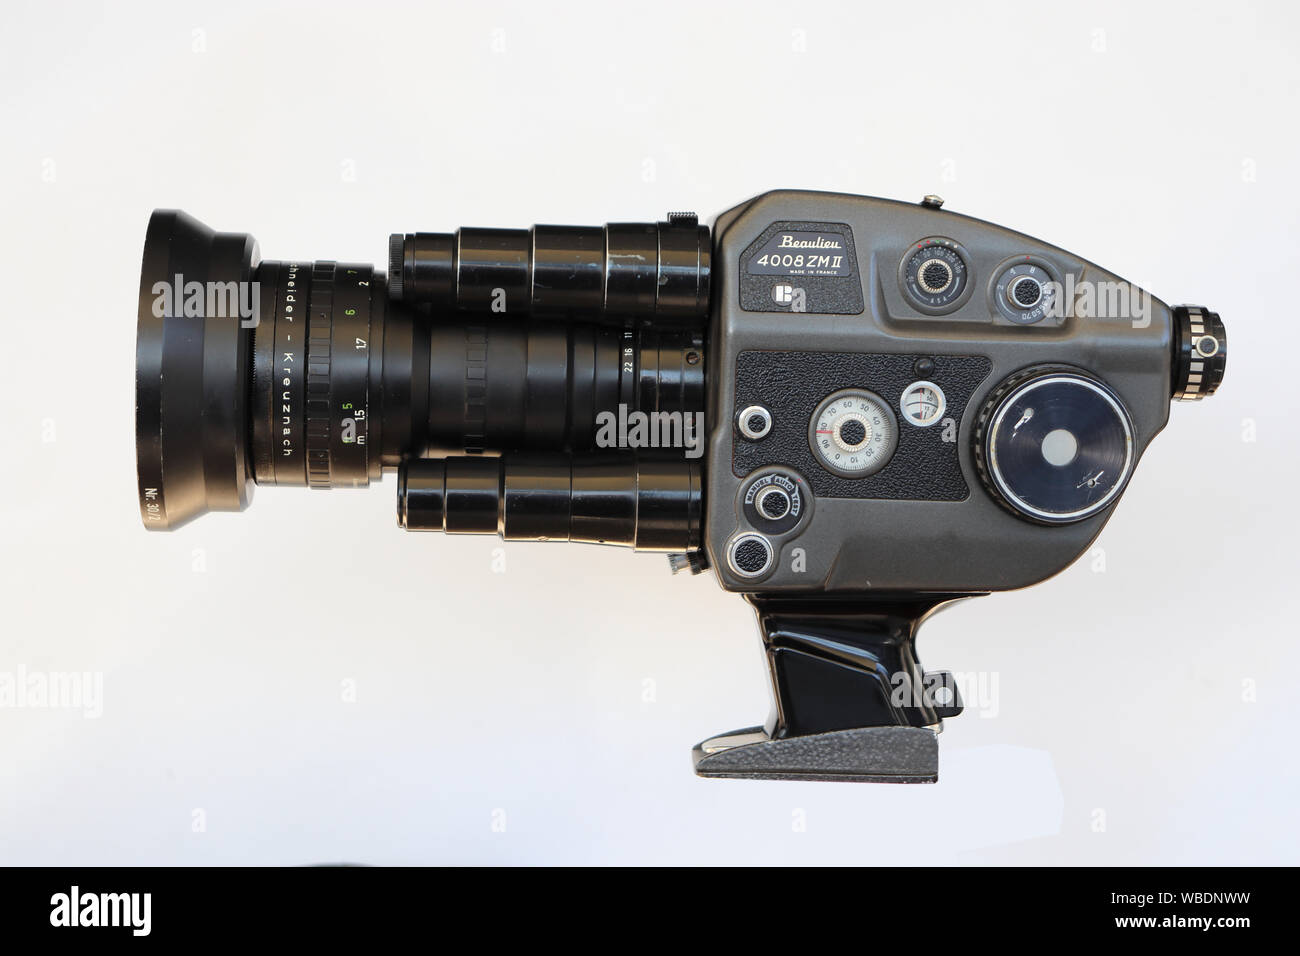 Super-8-Filmkamera Beaulieu 4008 ZM II mit Zoomobjektiv Schneider Optivaron 6-66, Seitenansicht Bedienelemente Stock Photo